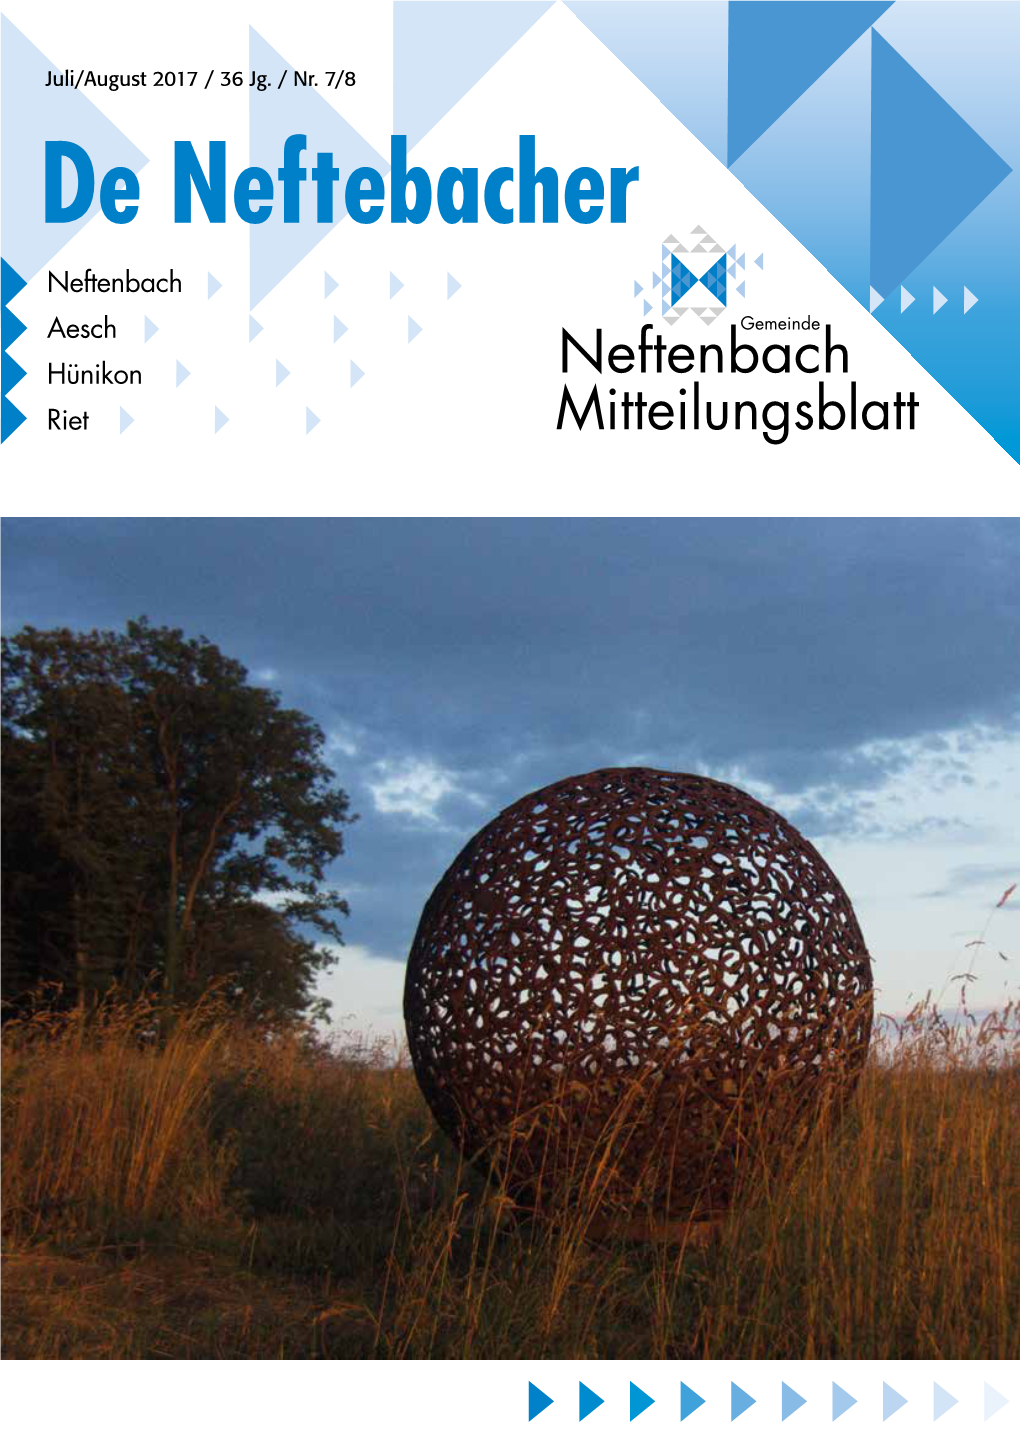 De Neftebacher Neftenbach Aesch Hünikon Neftenbach Riet Mitteilungsblatt Detail FACHGESCHÄFTE Neftenbach